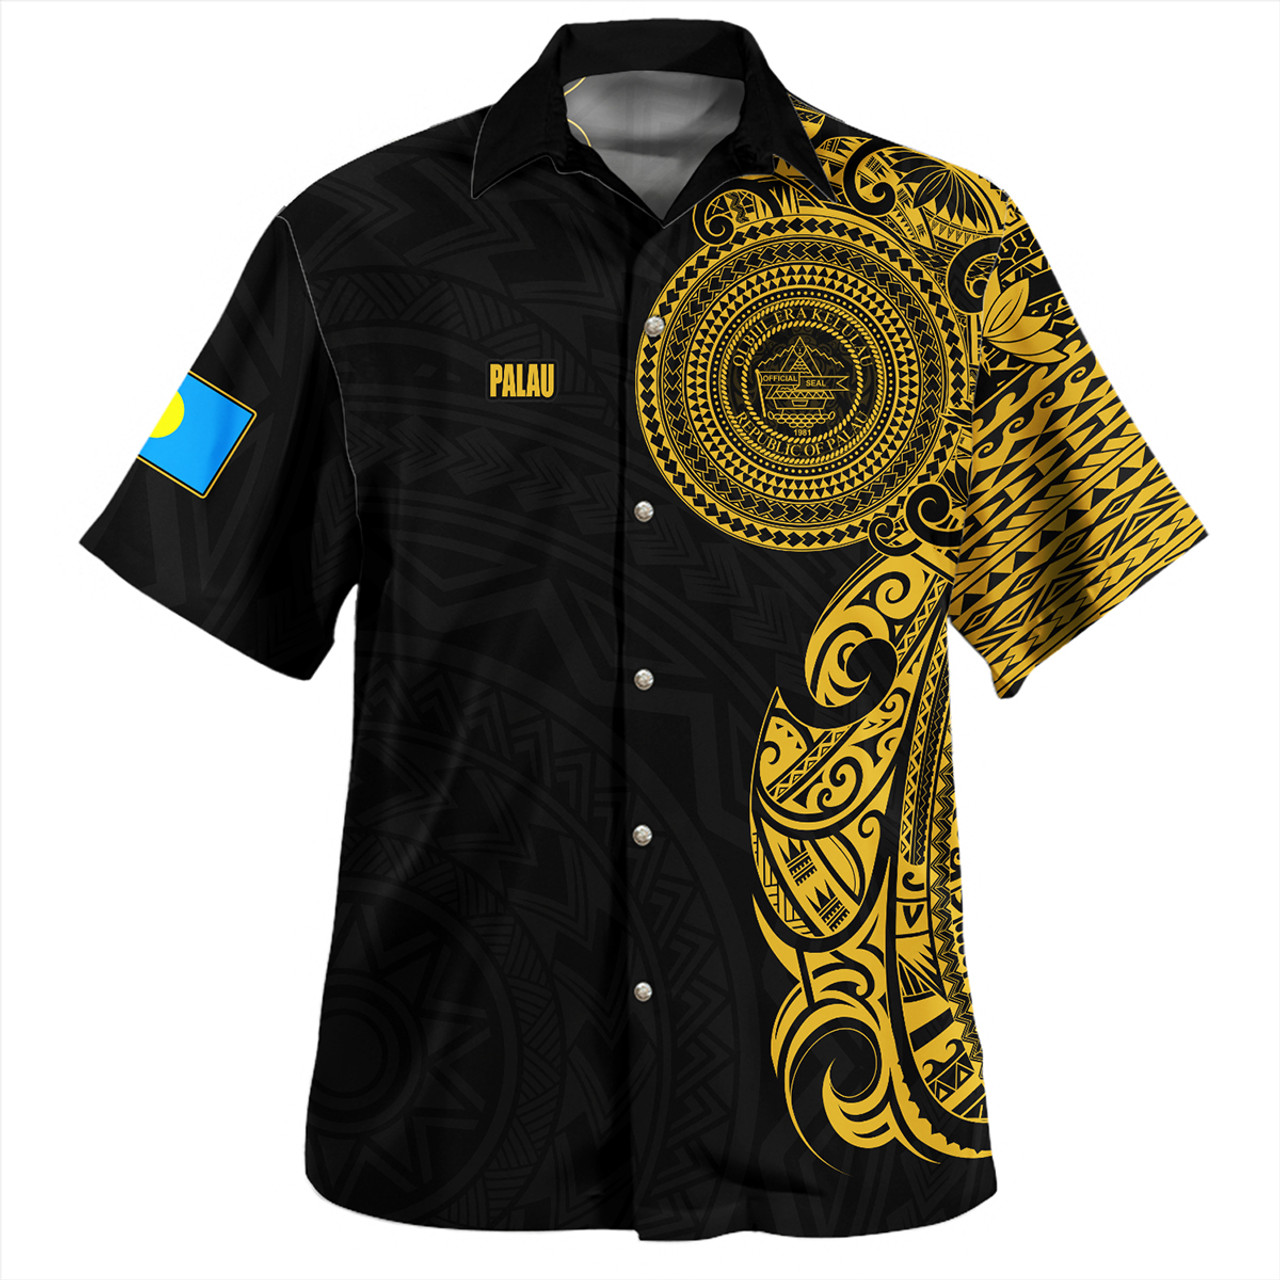 Palau Hawaiian Shirt Custom Polynesian Half Sleeve Gold Tattoo With Seal Black